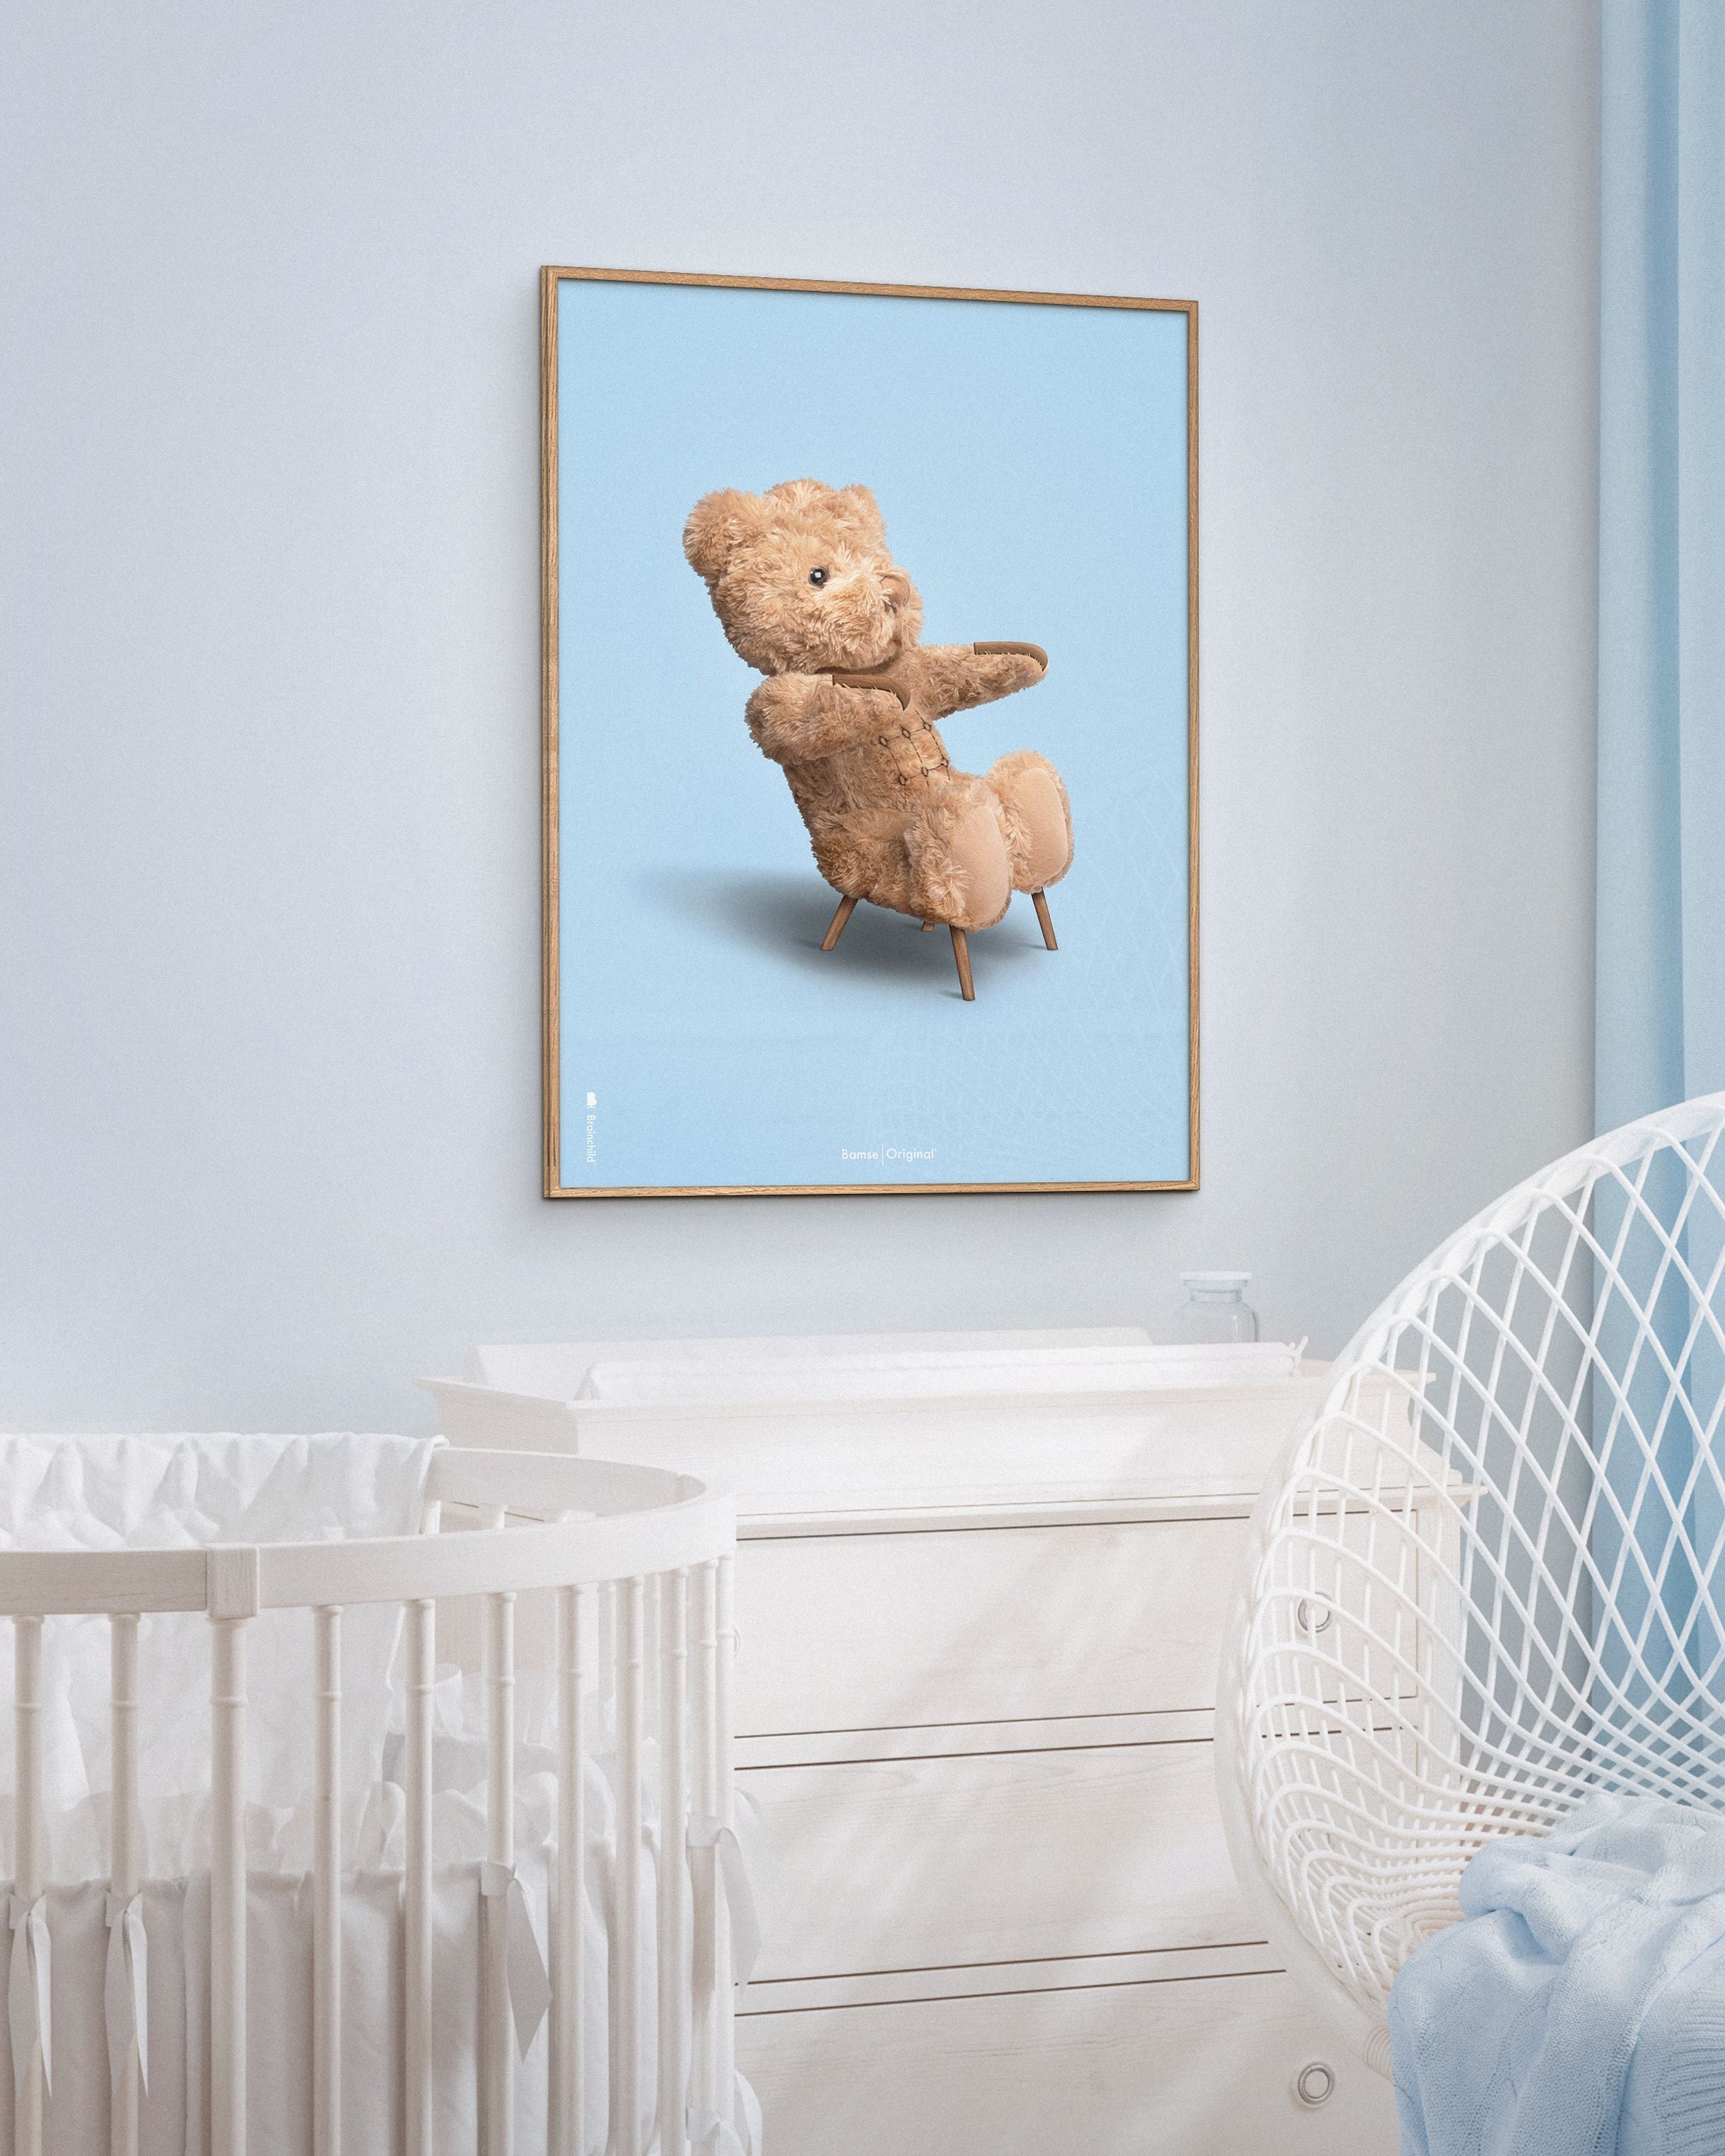 Brainchild Teddy Bear Classic Poster Frame lavet af Dark Wood Ram 50x70 cm, lyseblå baggrund